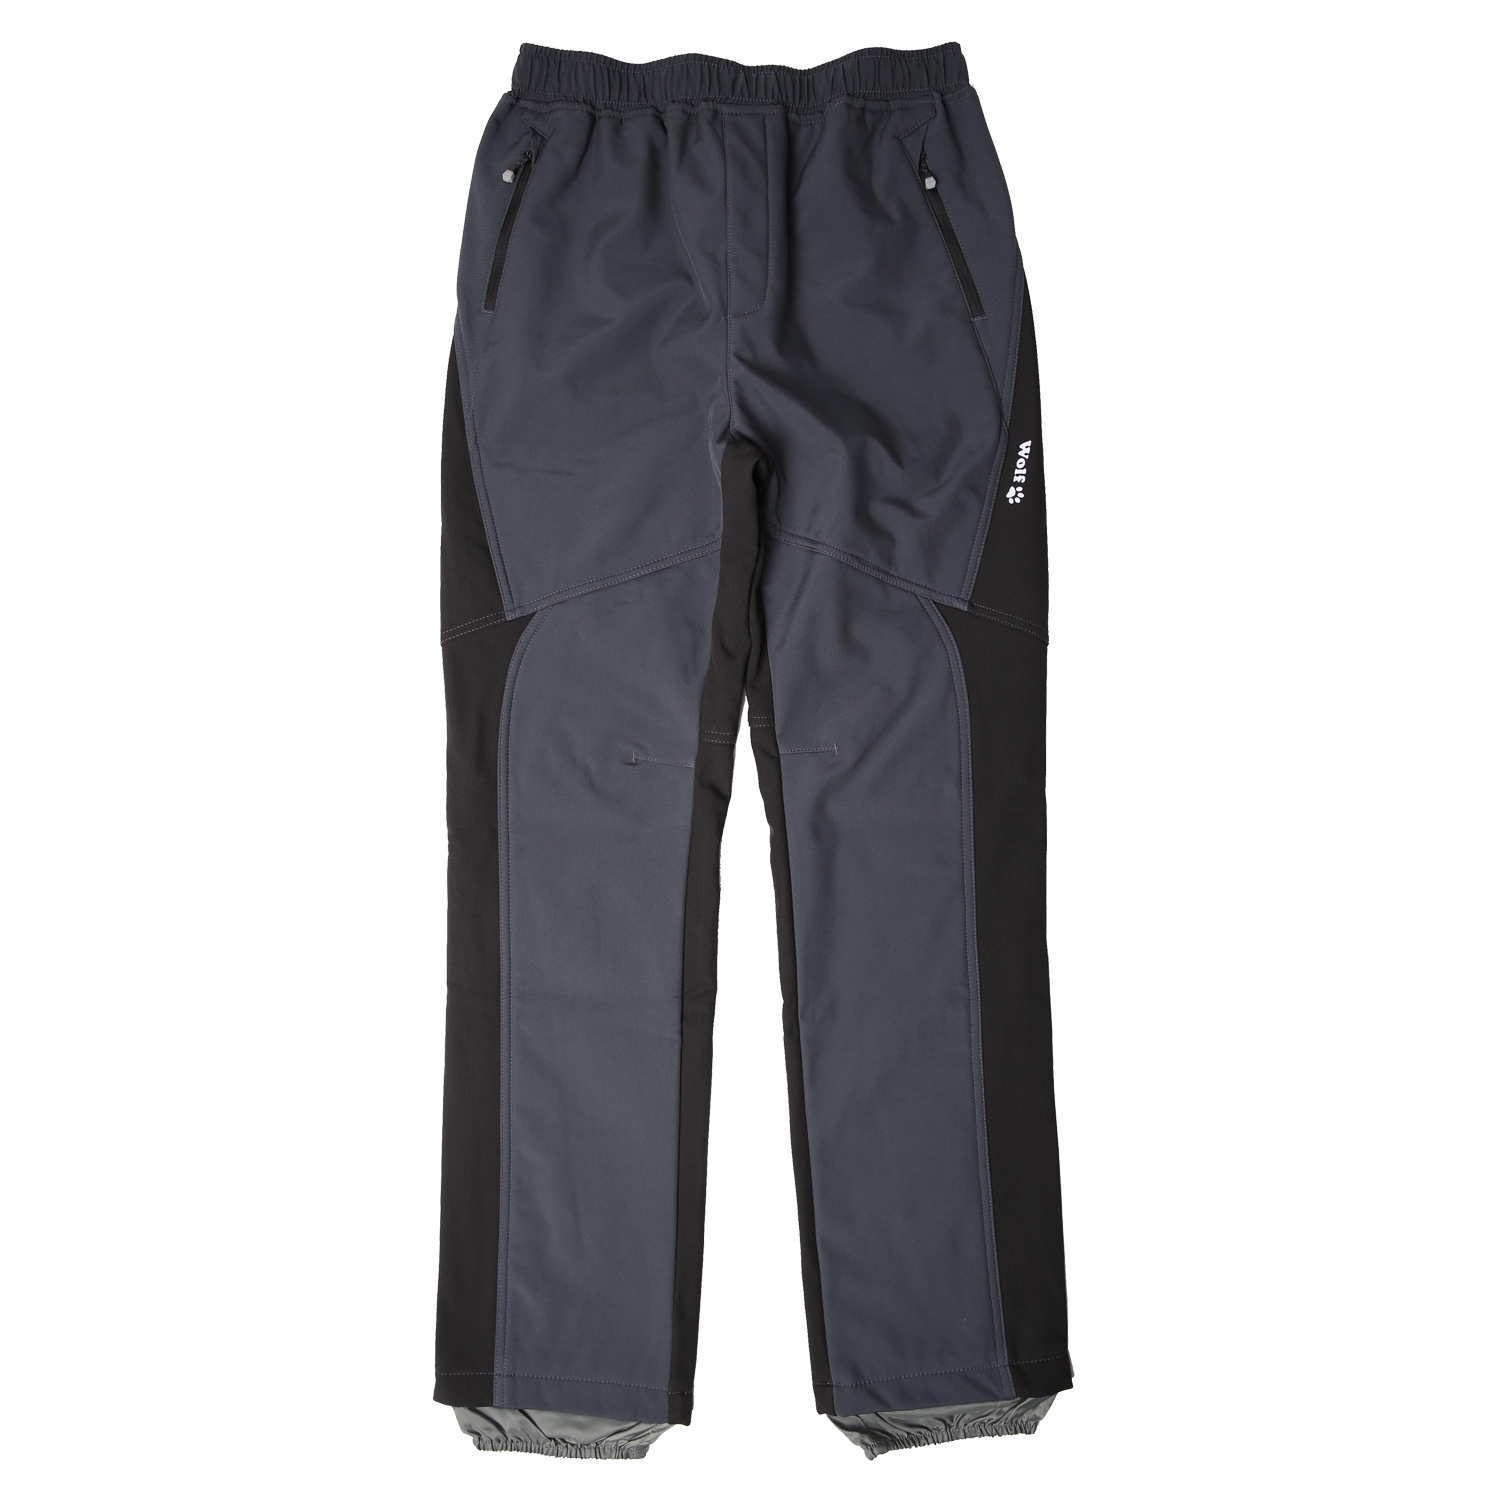 Chlapecké softshellové kalhoty, zateplené - Wolf B2298, šedá Barva: Šedá, Velikost: 158